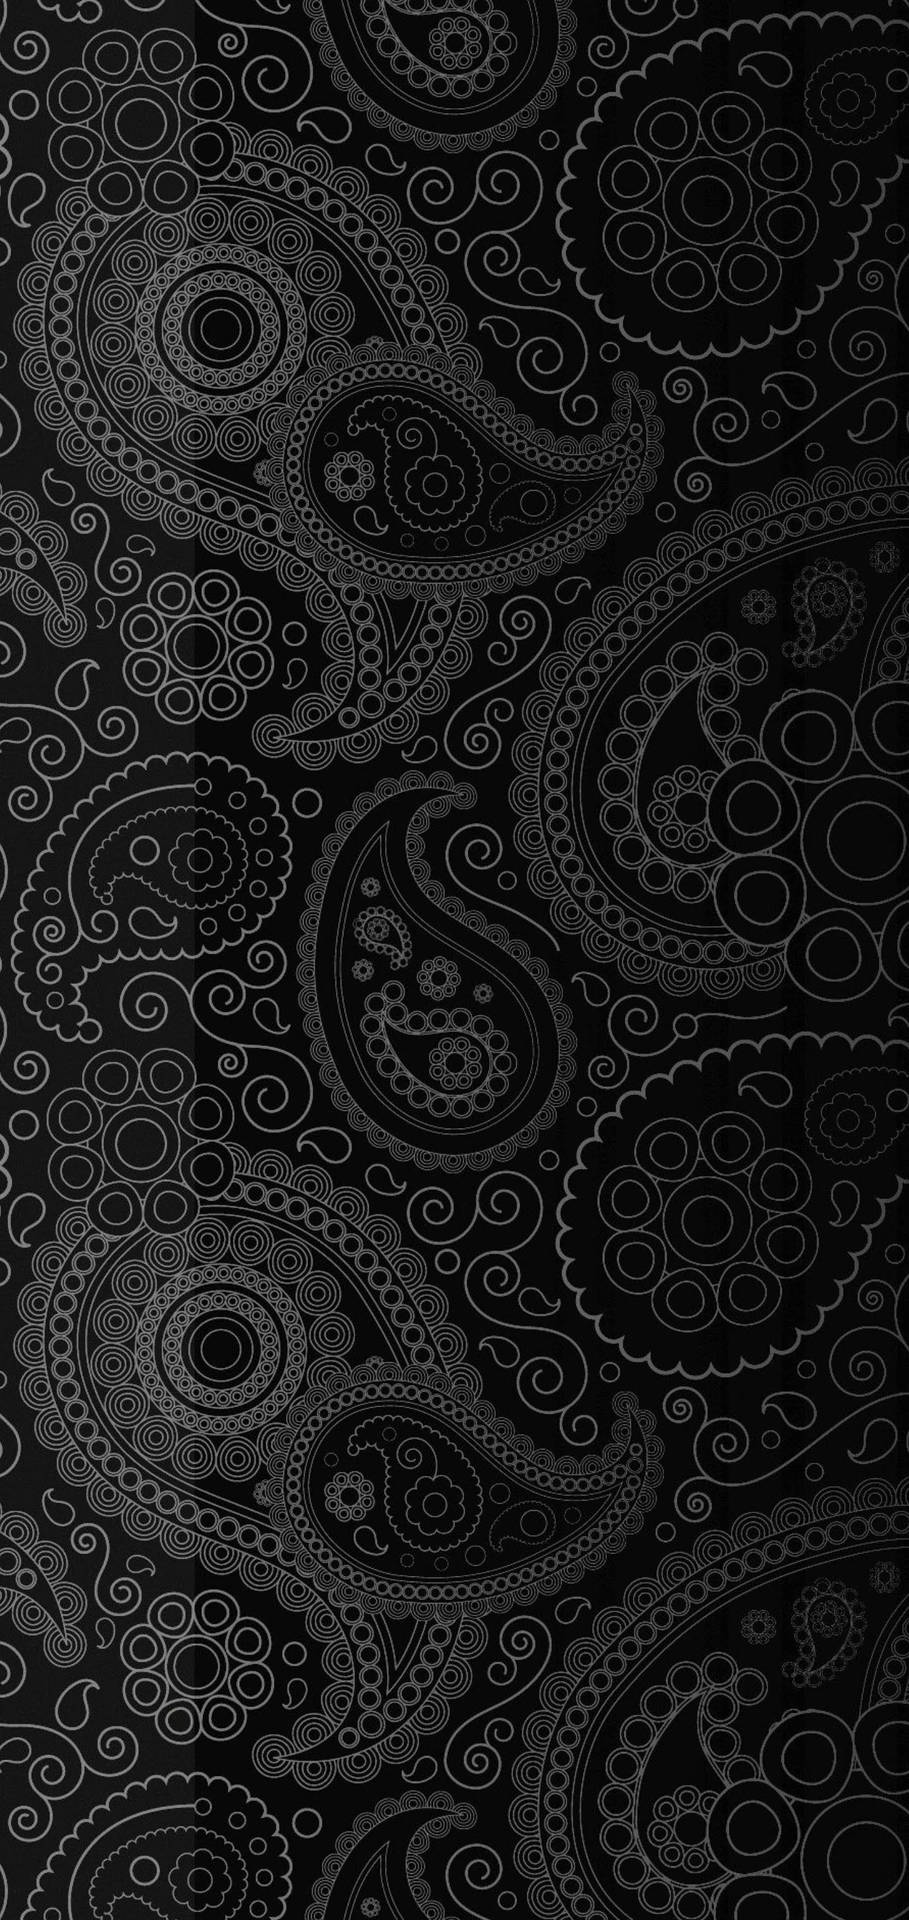 S10+ Black Bandana Background